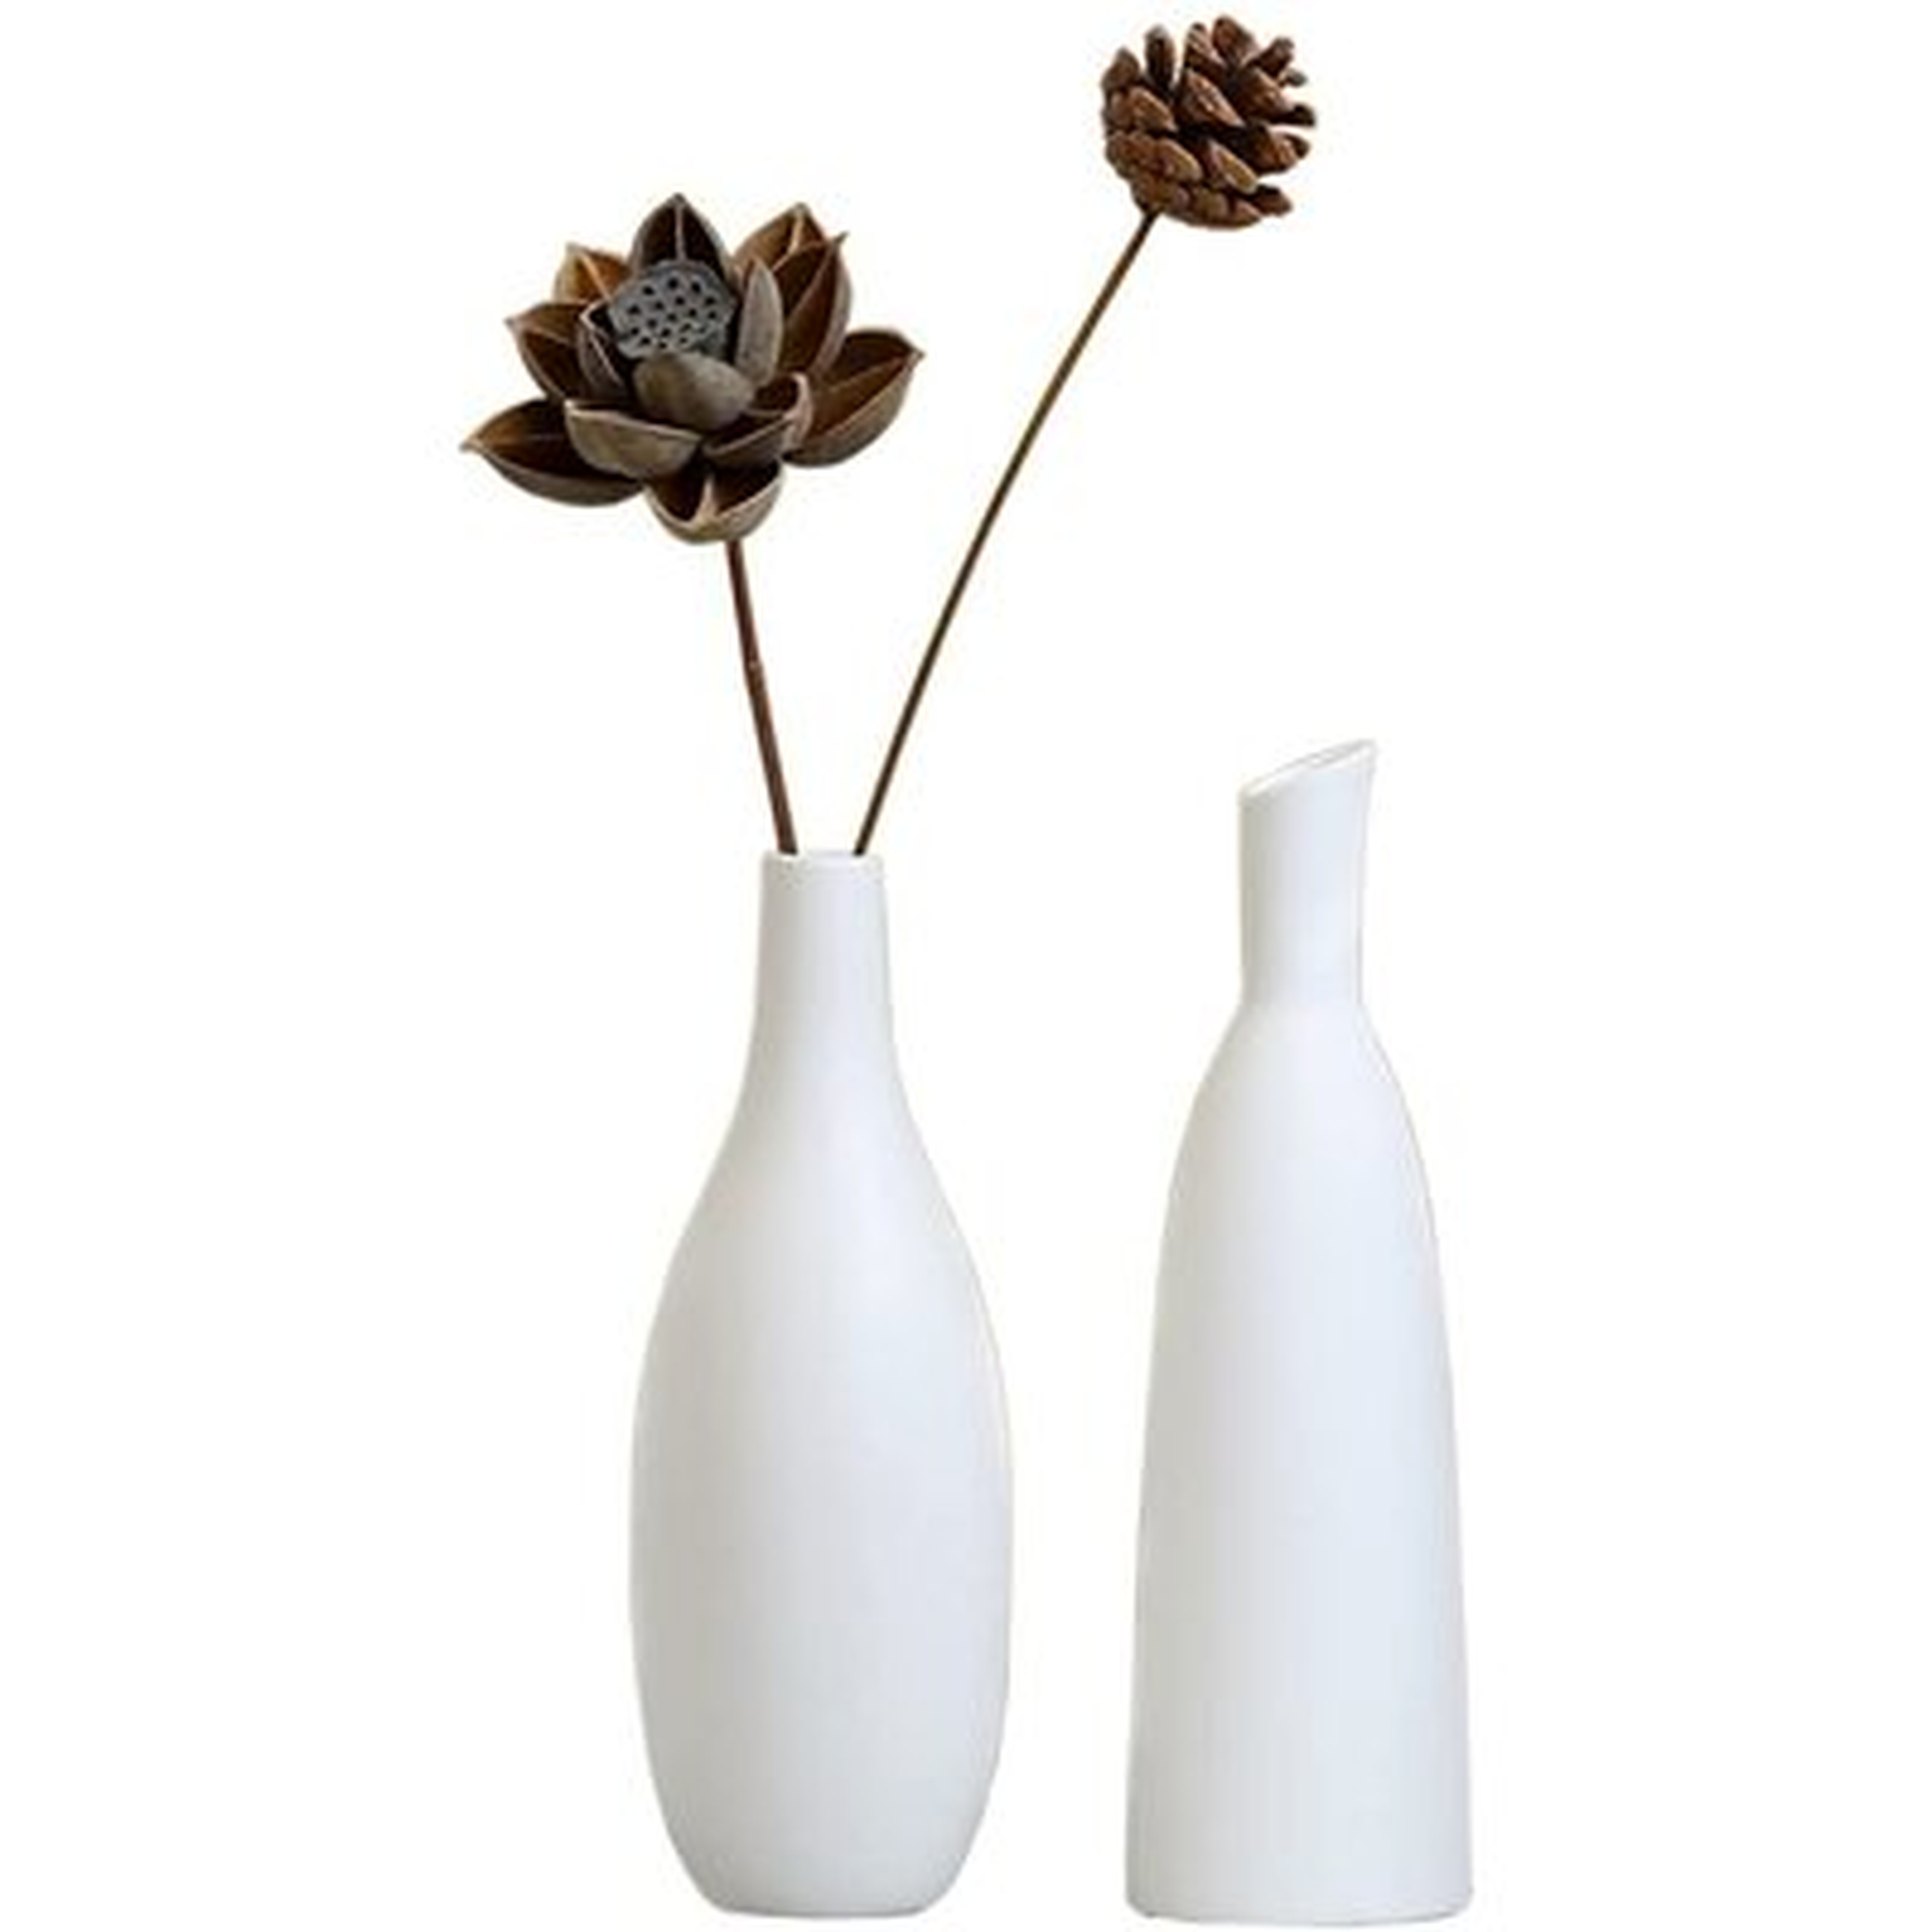 Flower Vases, Modern Art Small Ceramic Flower Vase, Centerpiece Flower Vases Set For Home, Living Room, Office, Wedding Decor - Wayfair